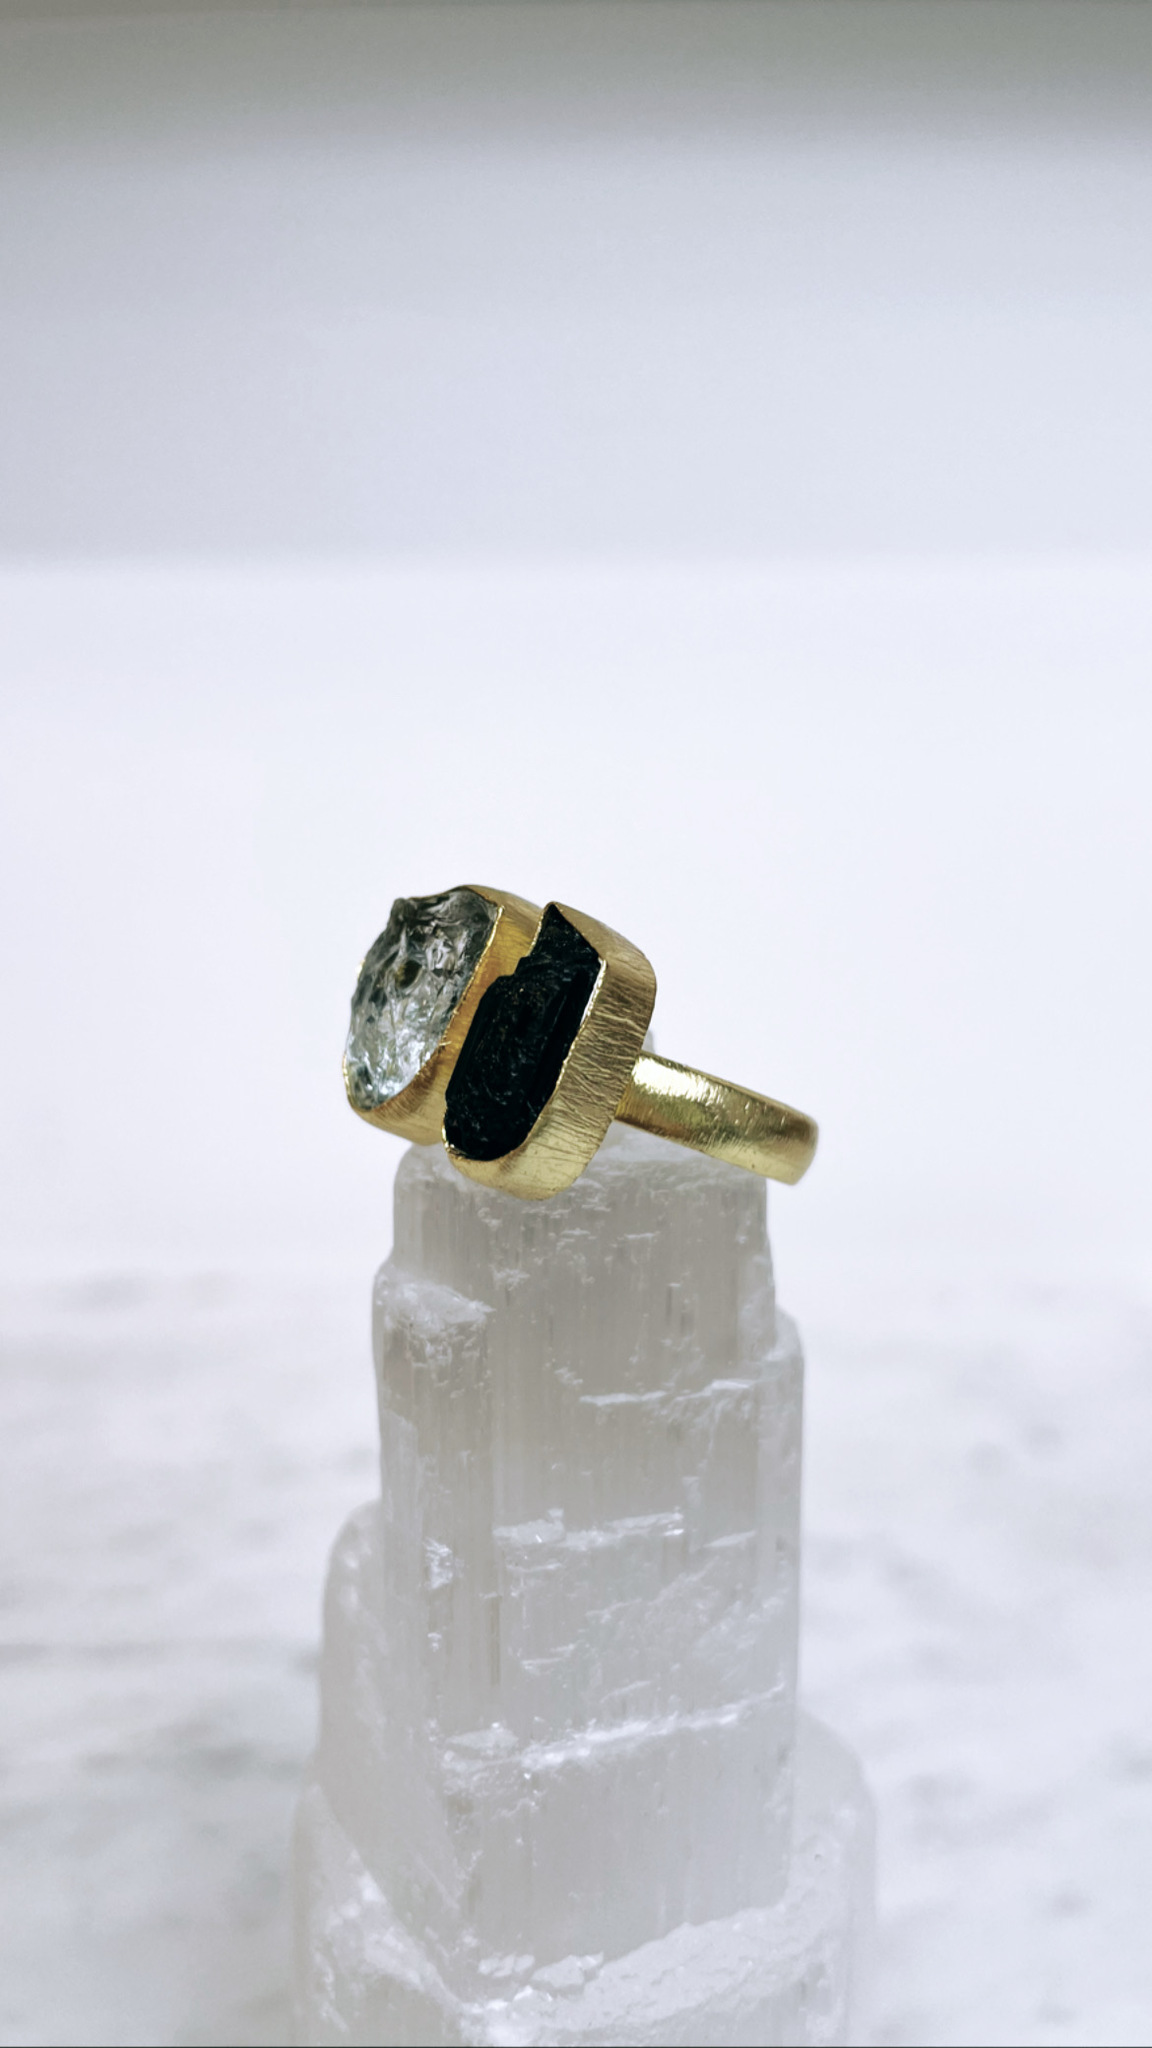 Svart turmalin & Akvamarin, ring från Biverståhl Crystals